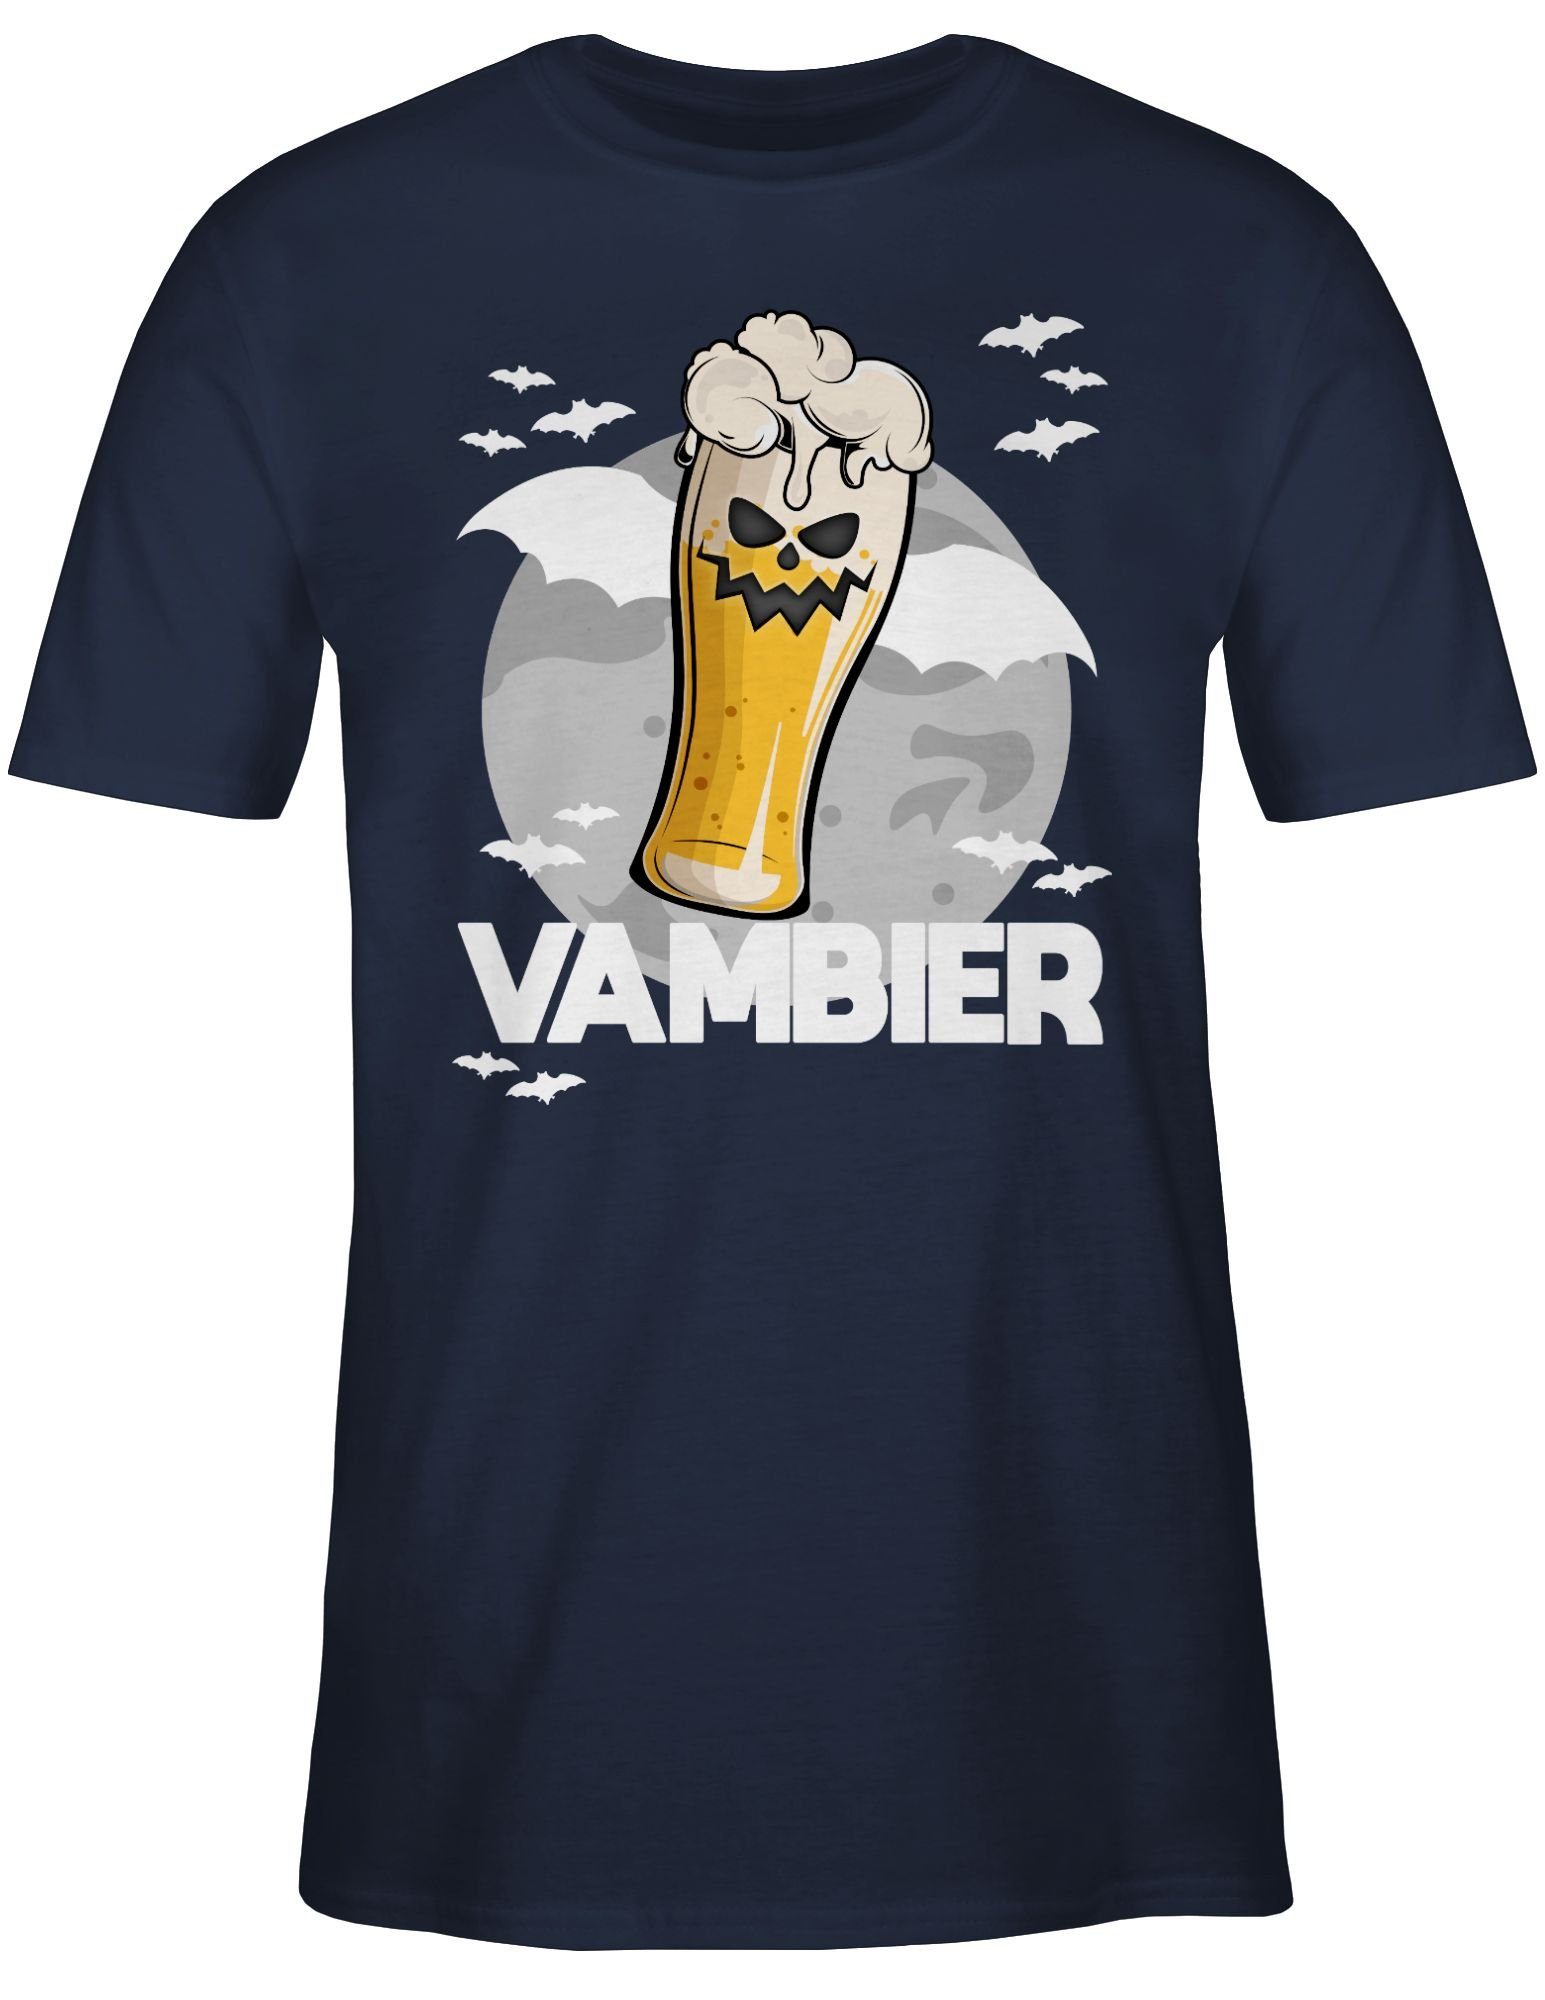 Blau Navy Bier 02 Shirtracer Zombie T-Shirt Vambier Herren Geschenk Halloween Kostüme